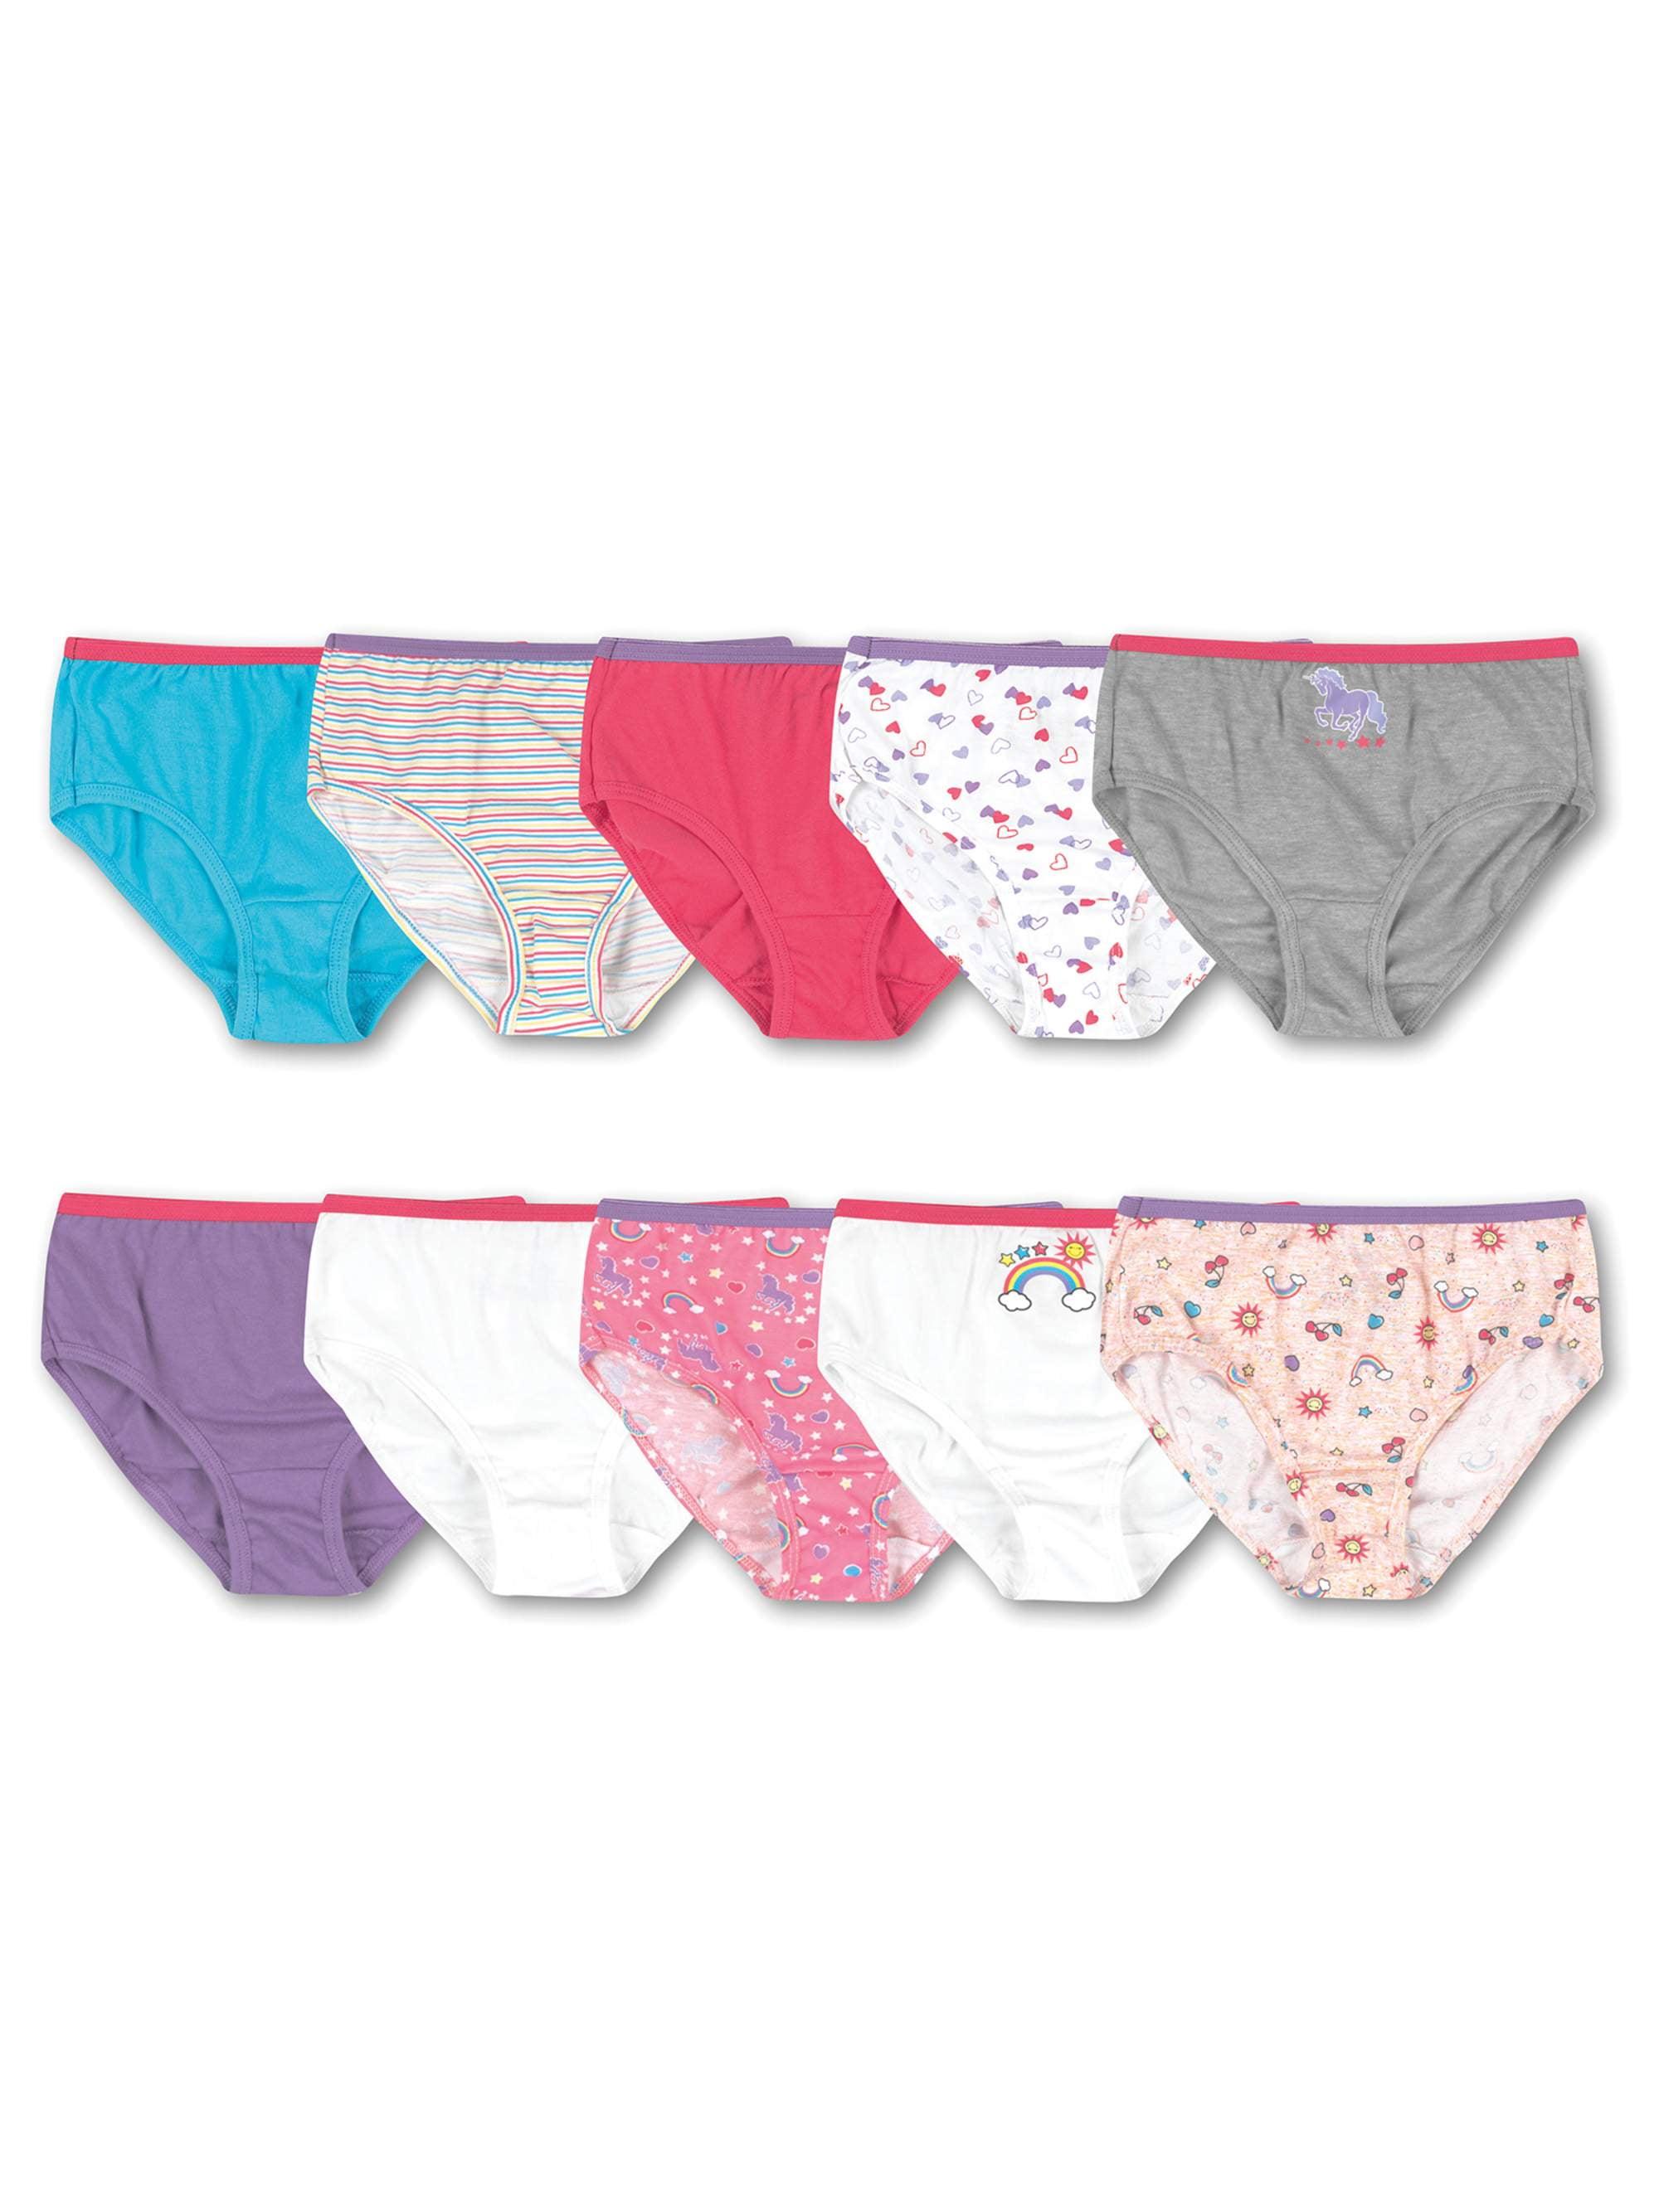 10 Pcs Women Flower Disposable Non-Woven Briefs Panties Underwear HOT B4B4